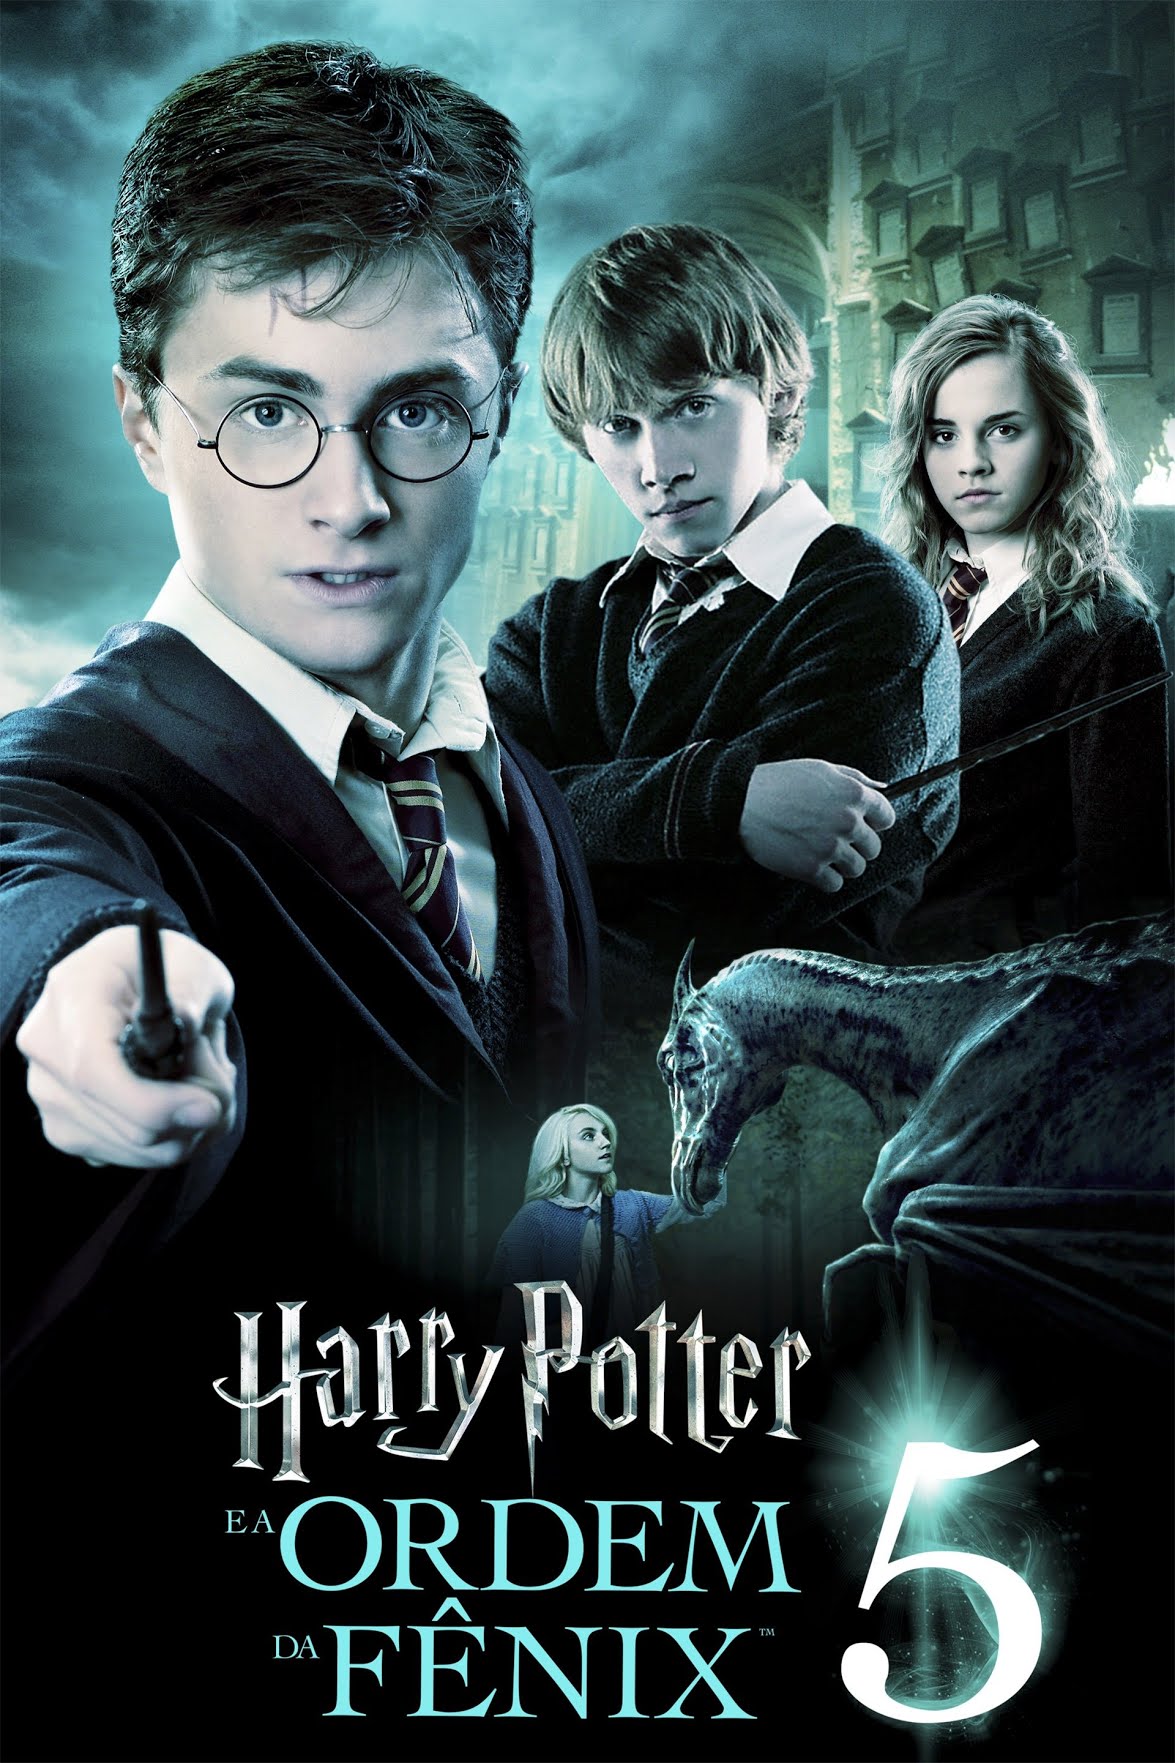 Movies News - Os filmes do Harry Potter vão ter sempre um lugar